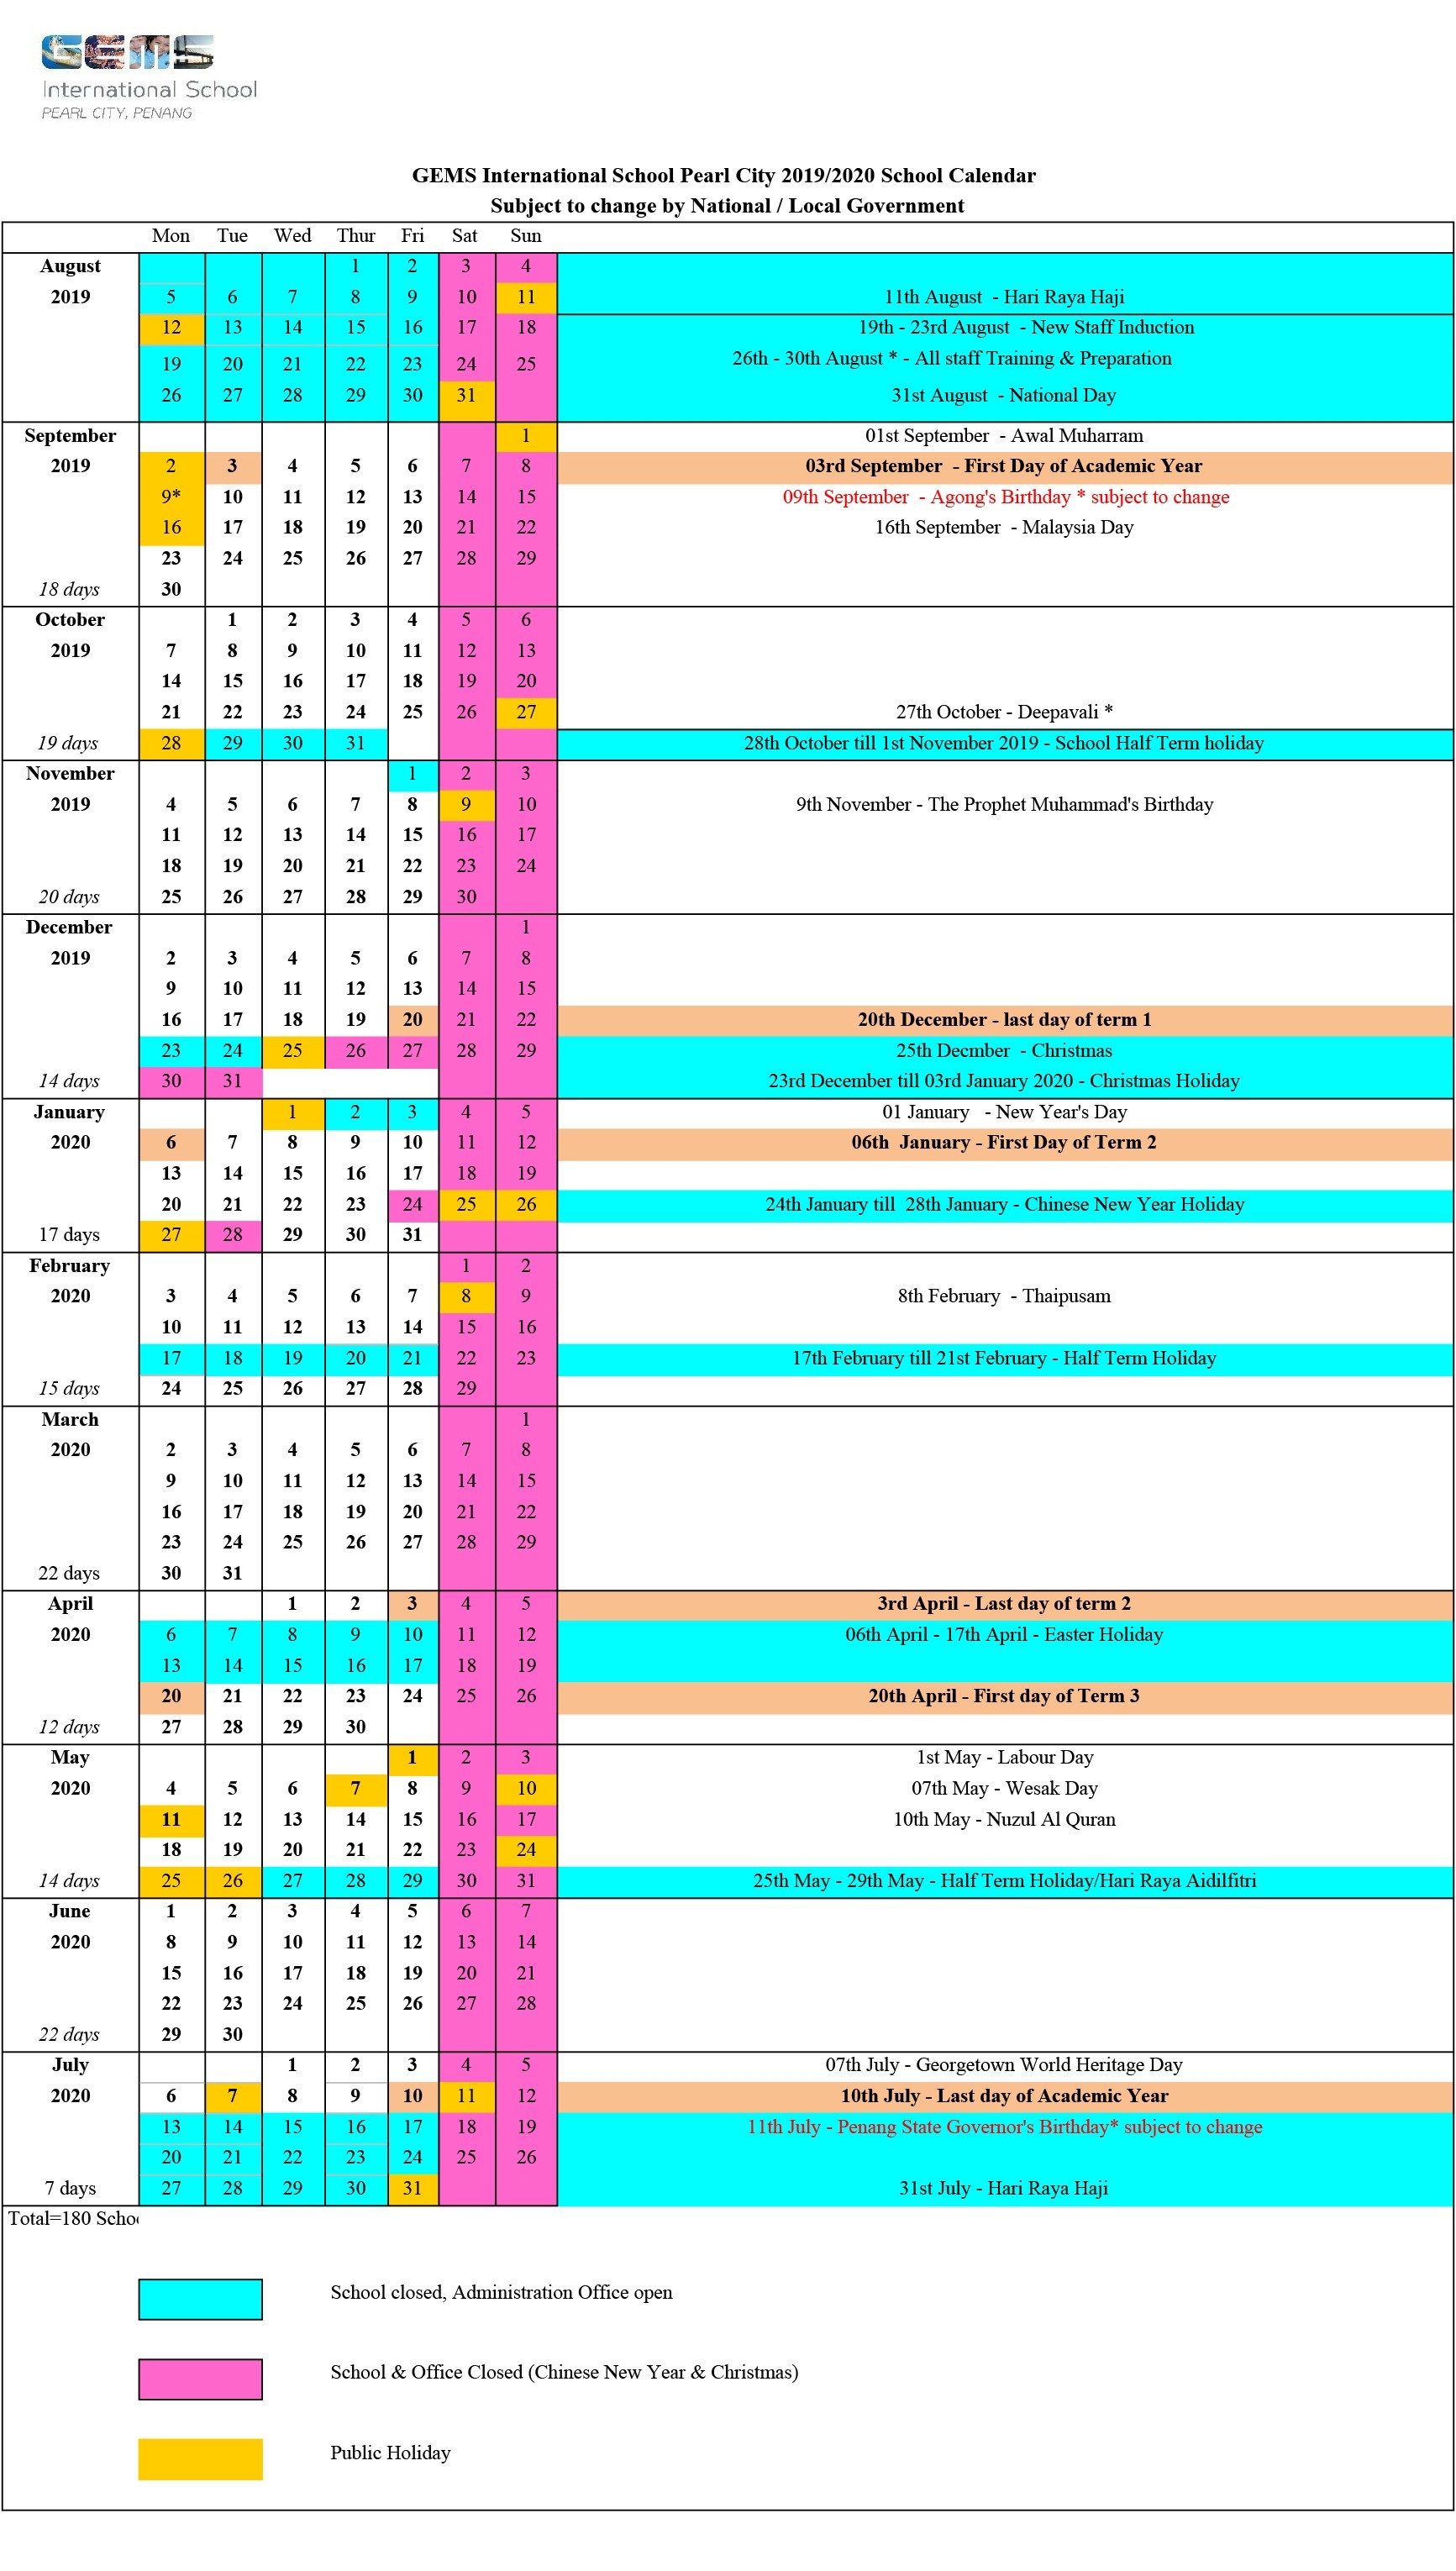 2019/2020 School Calendar - Gems International School-2020 International School Holidays Malaysia